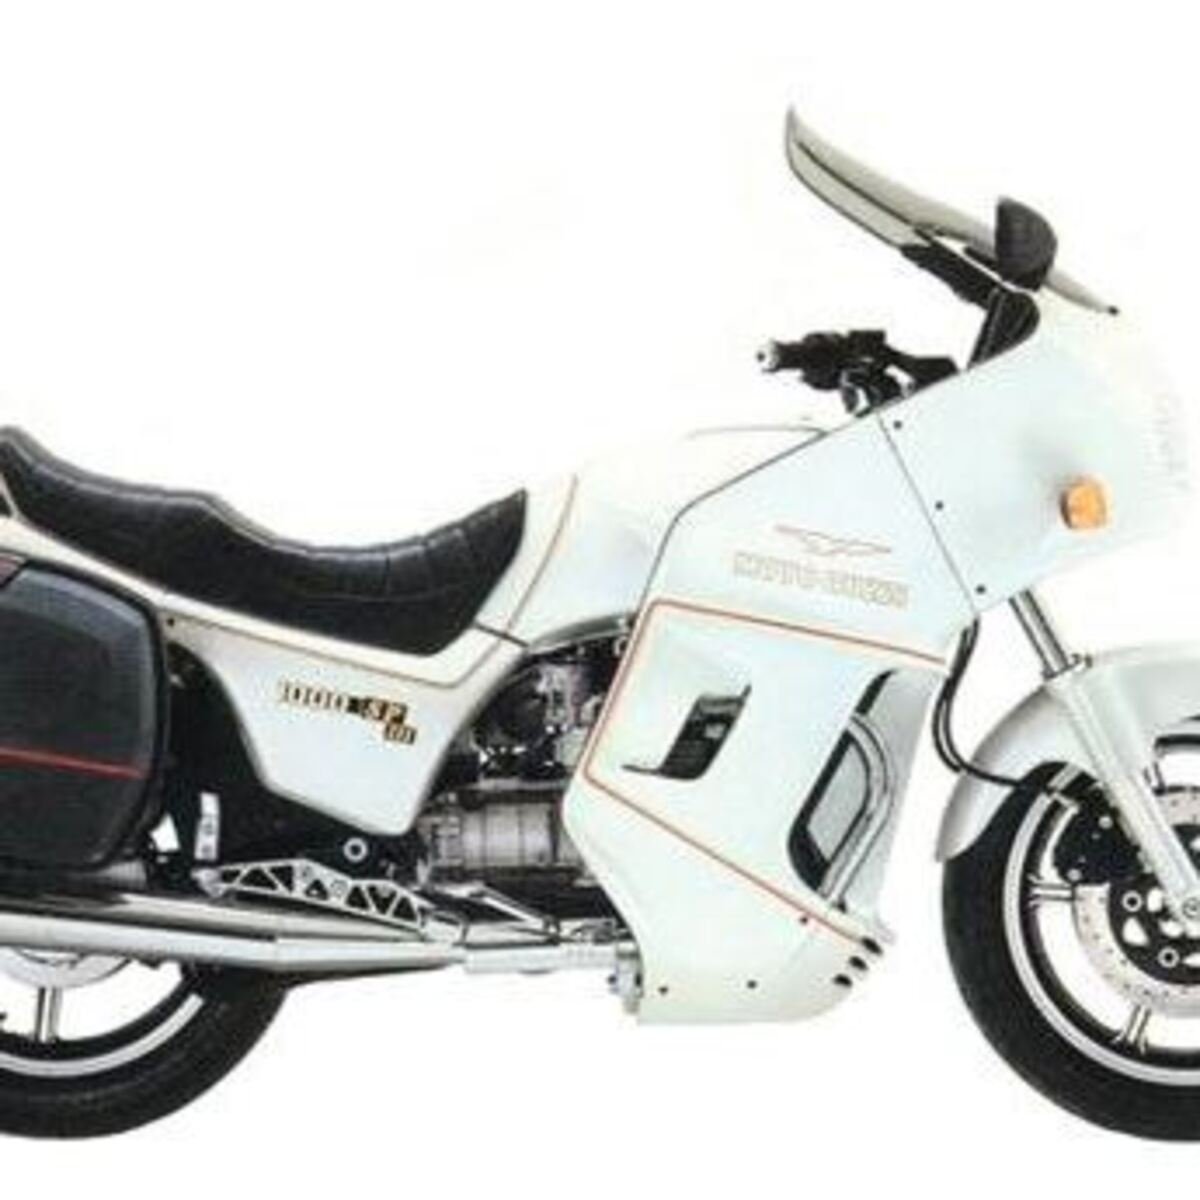 Moto Guzzi Mille SP III